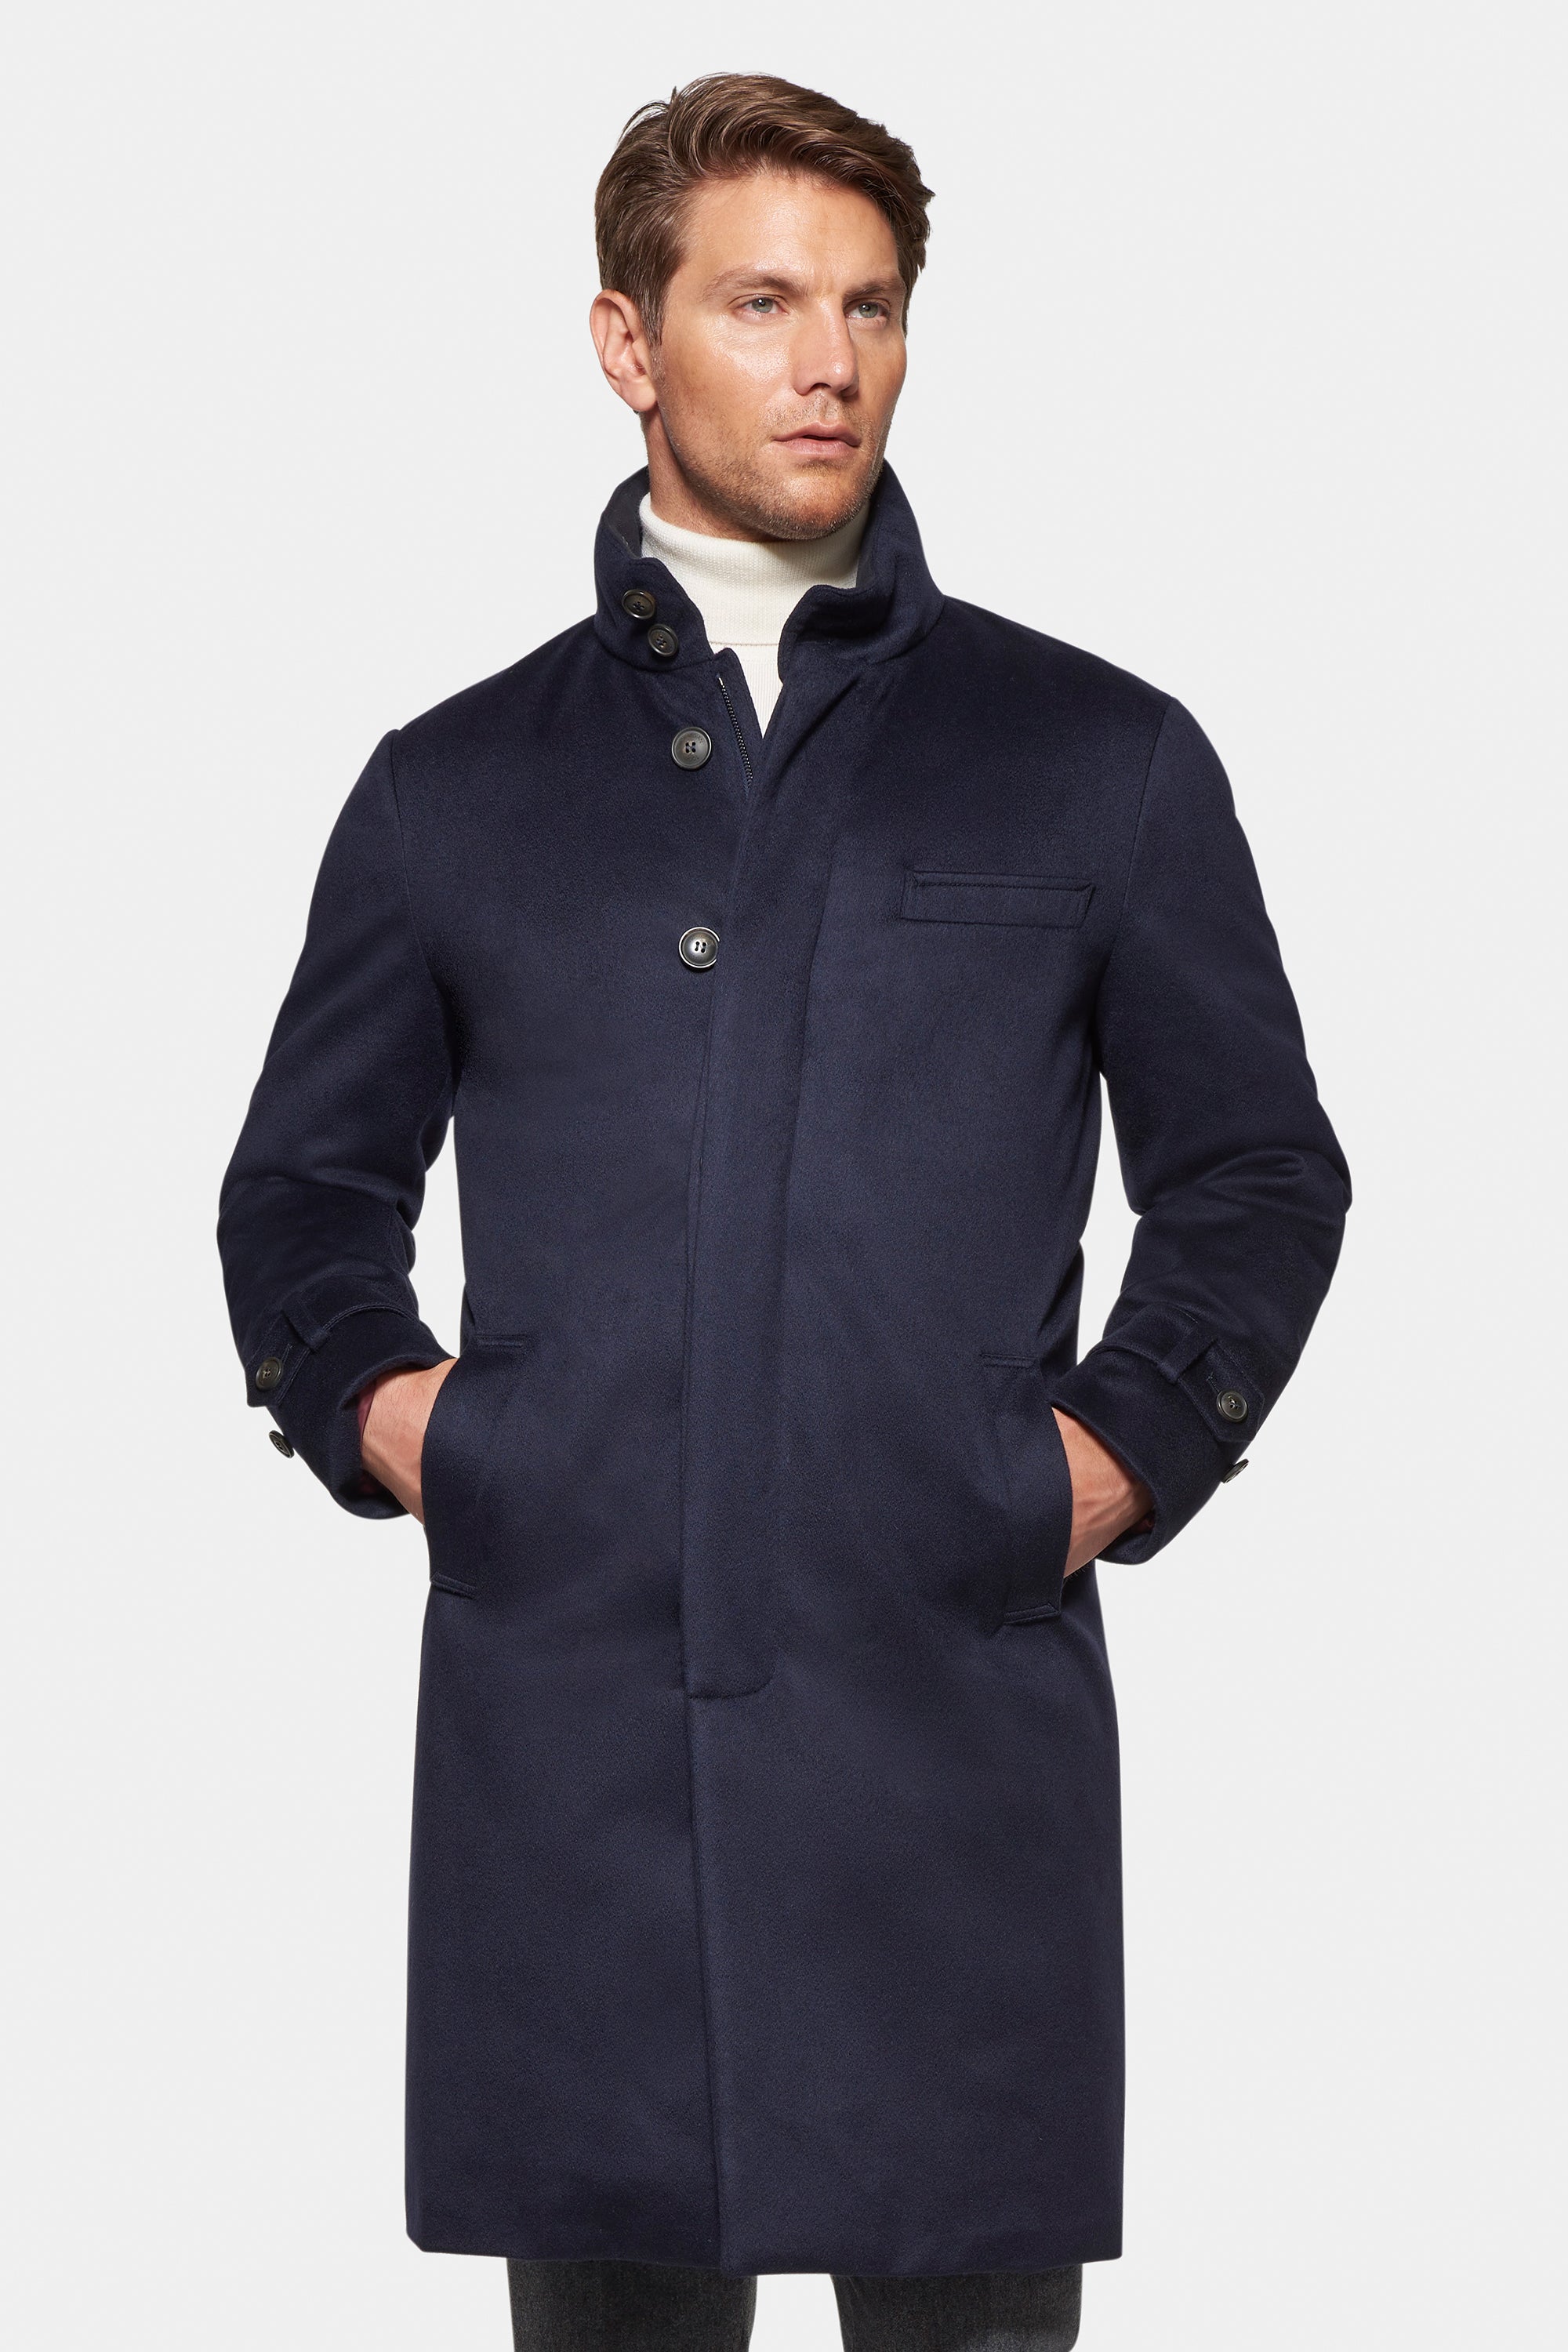 Norwegian Wool Pure Cashmere Topcoat Navy - XXL (US 46-48 / It 56-58)